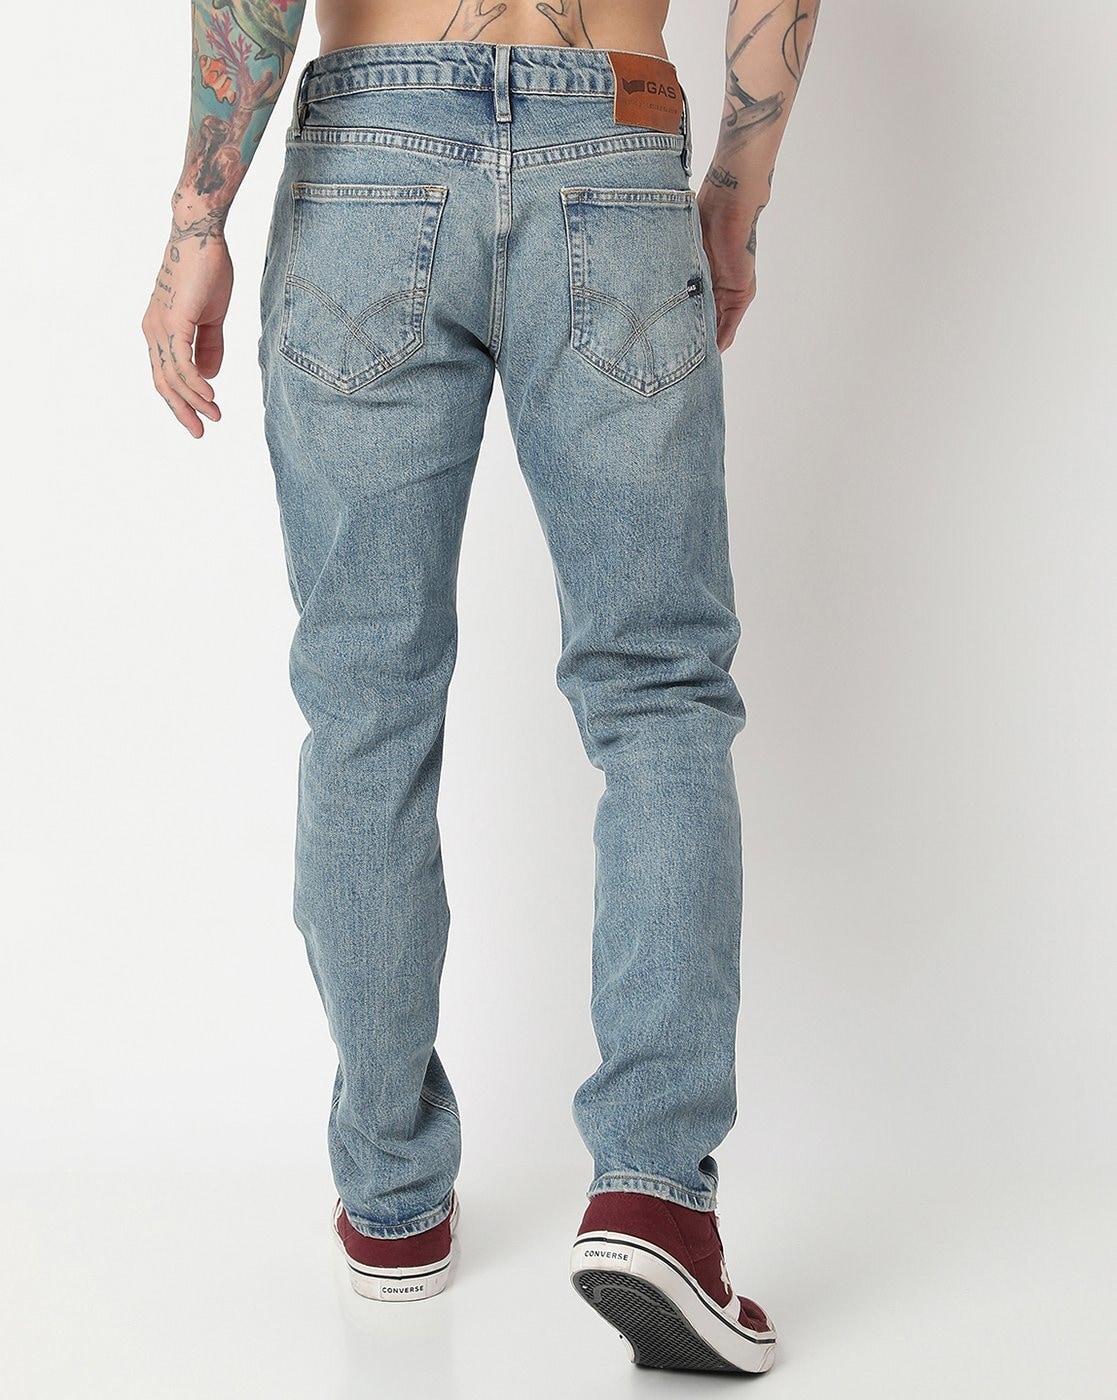 Plain Blue Levis Men Jeans, Slim Fit at Rs 650/piece in Kurnool